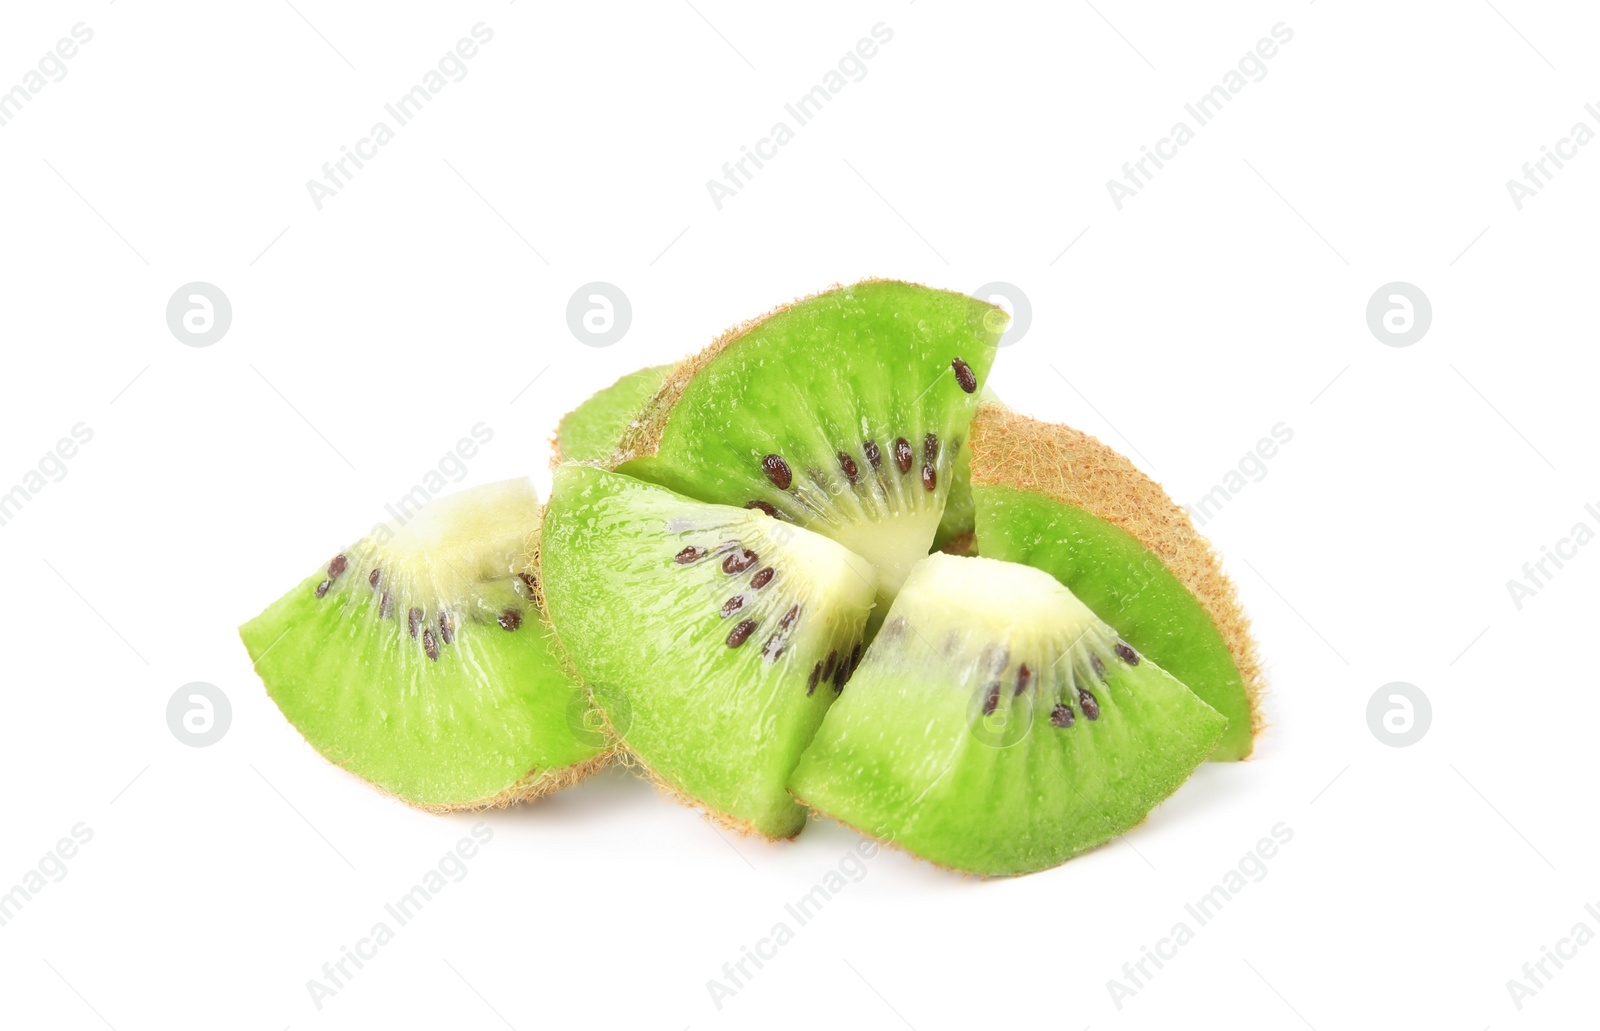 Photo of Cut fresh ripe kiwis on white background